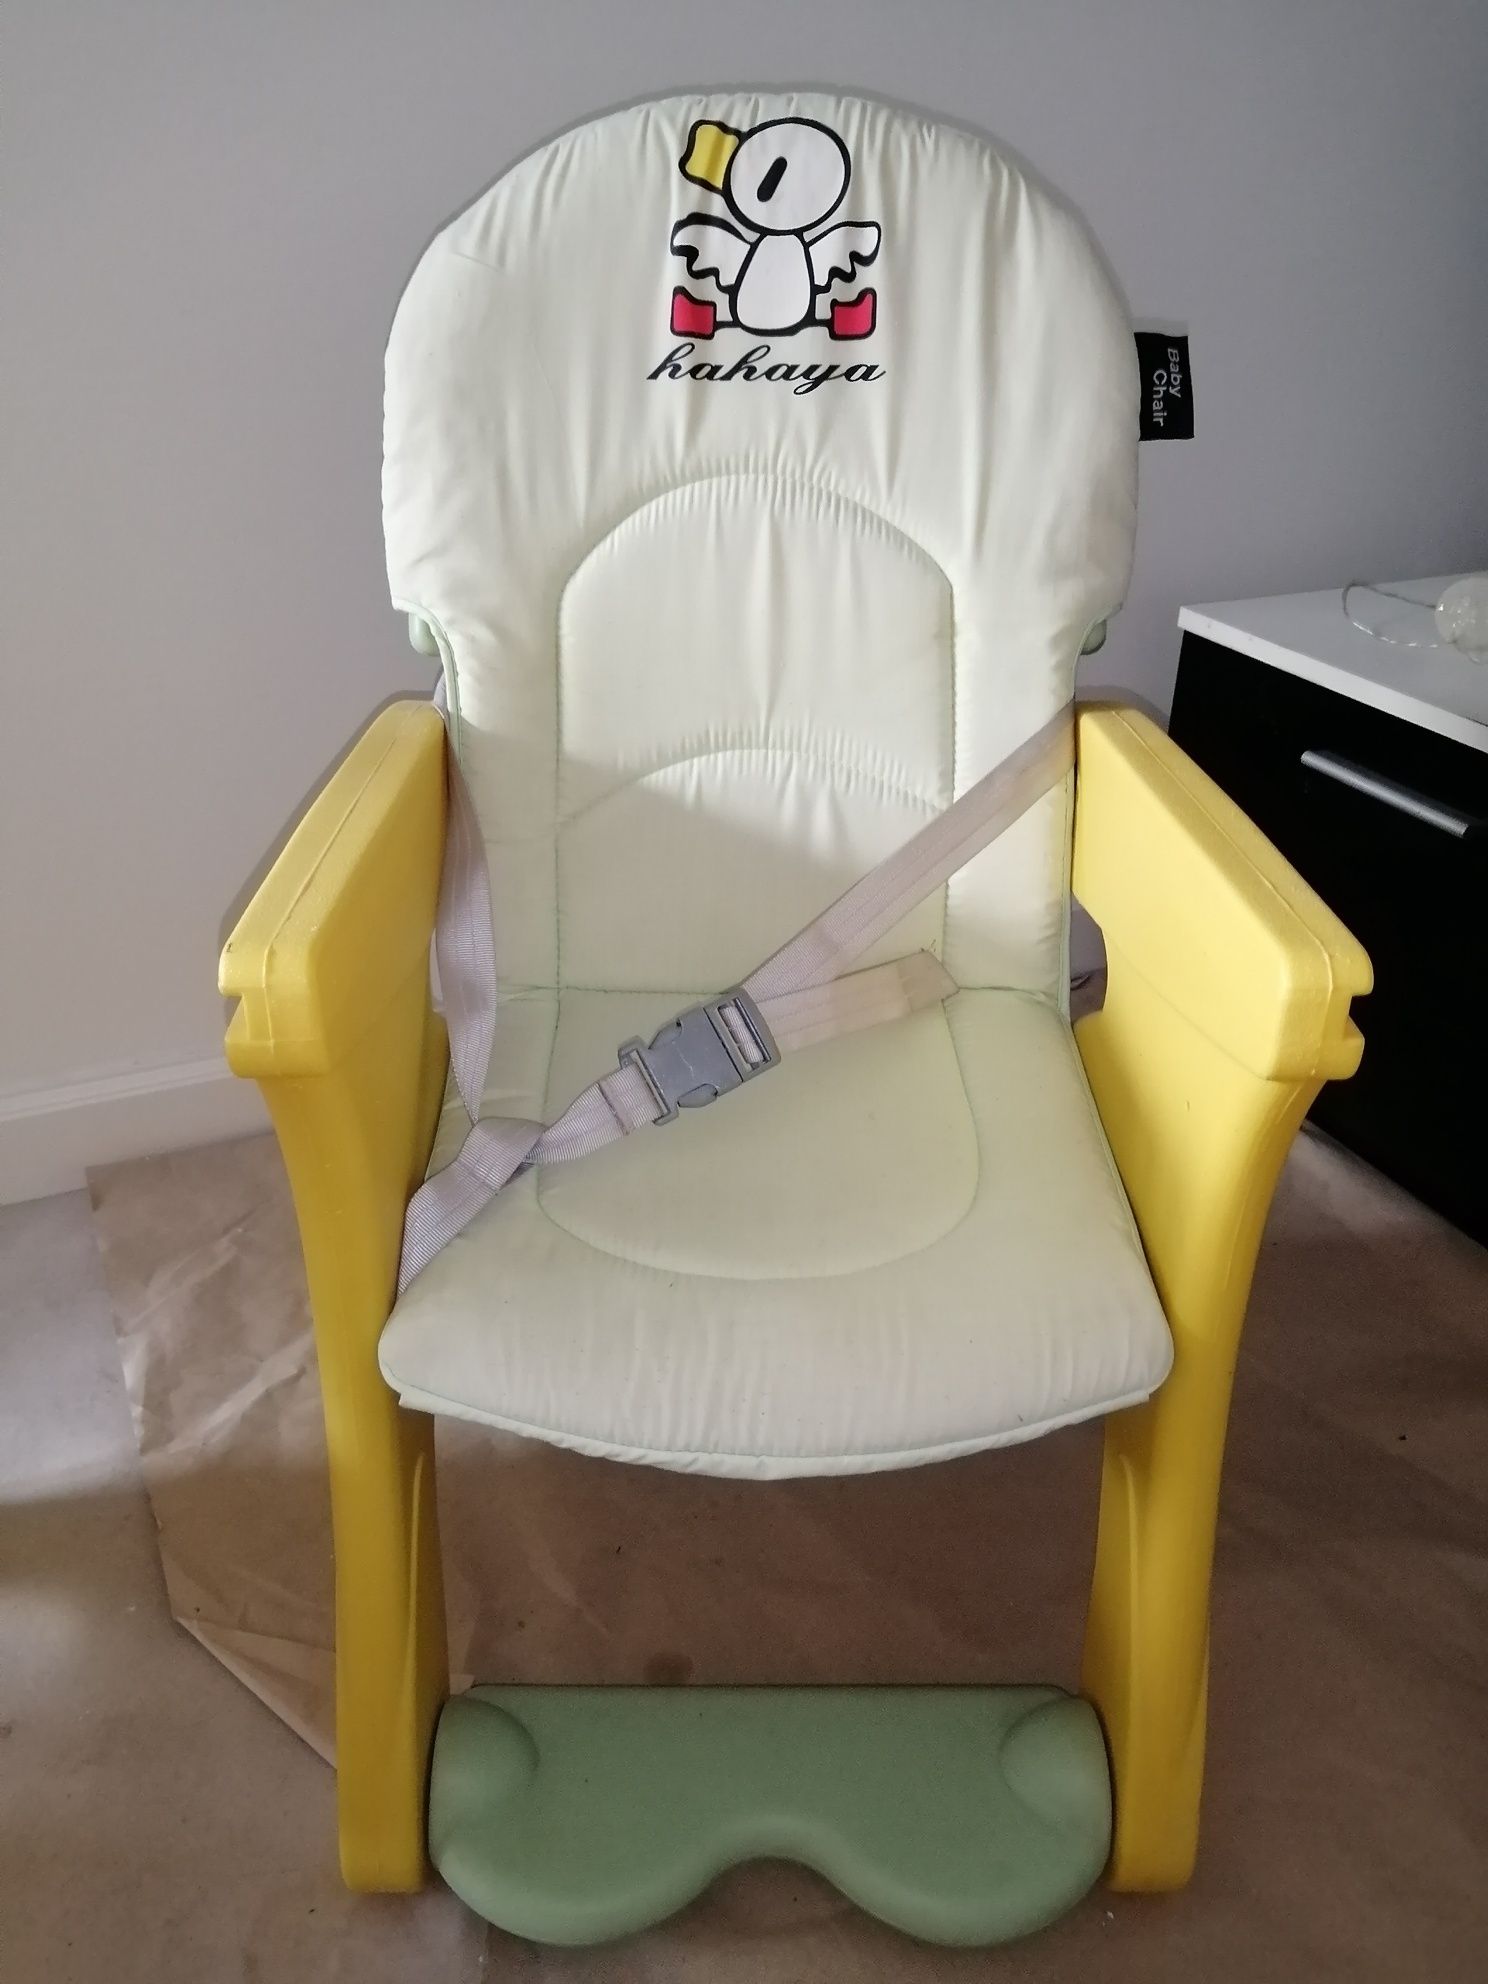 Stolik i krzesełko dla dziecka